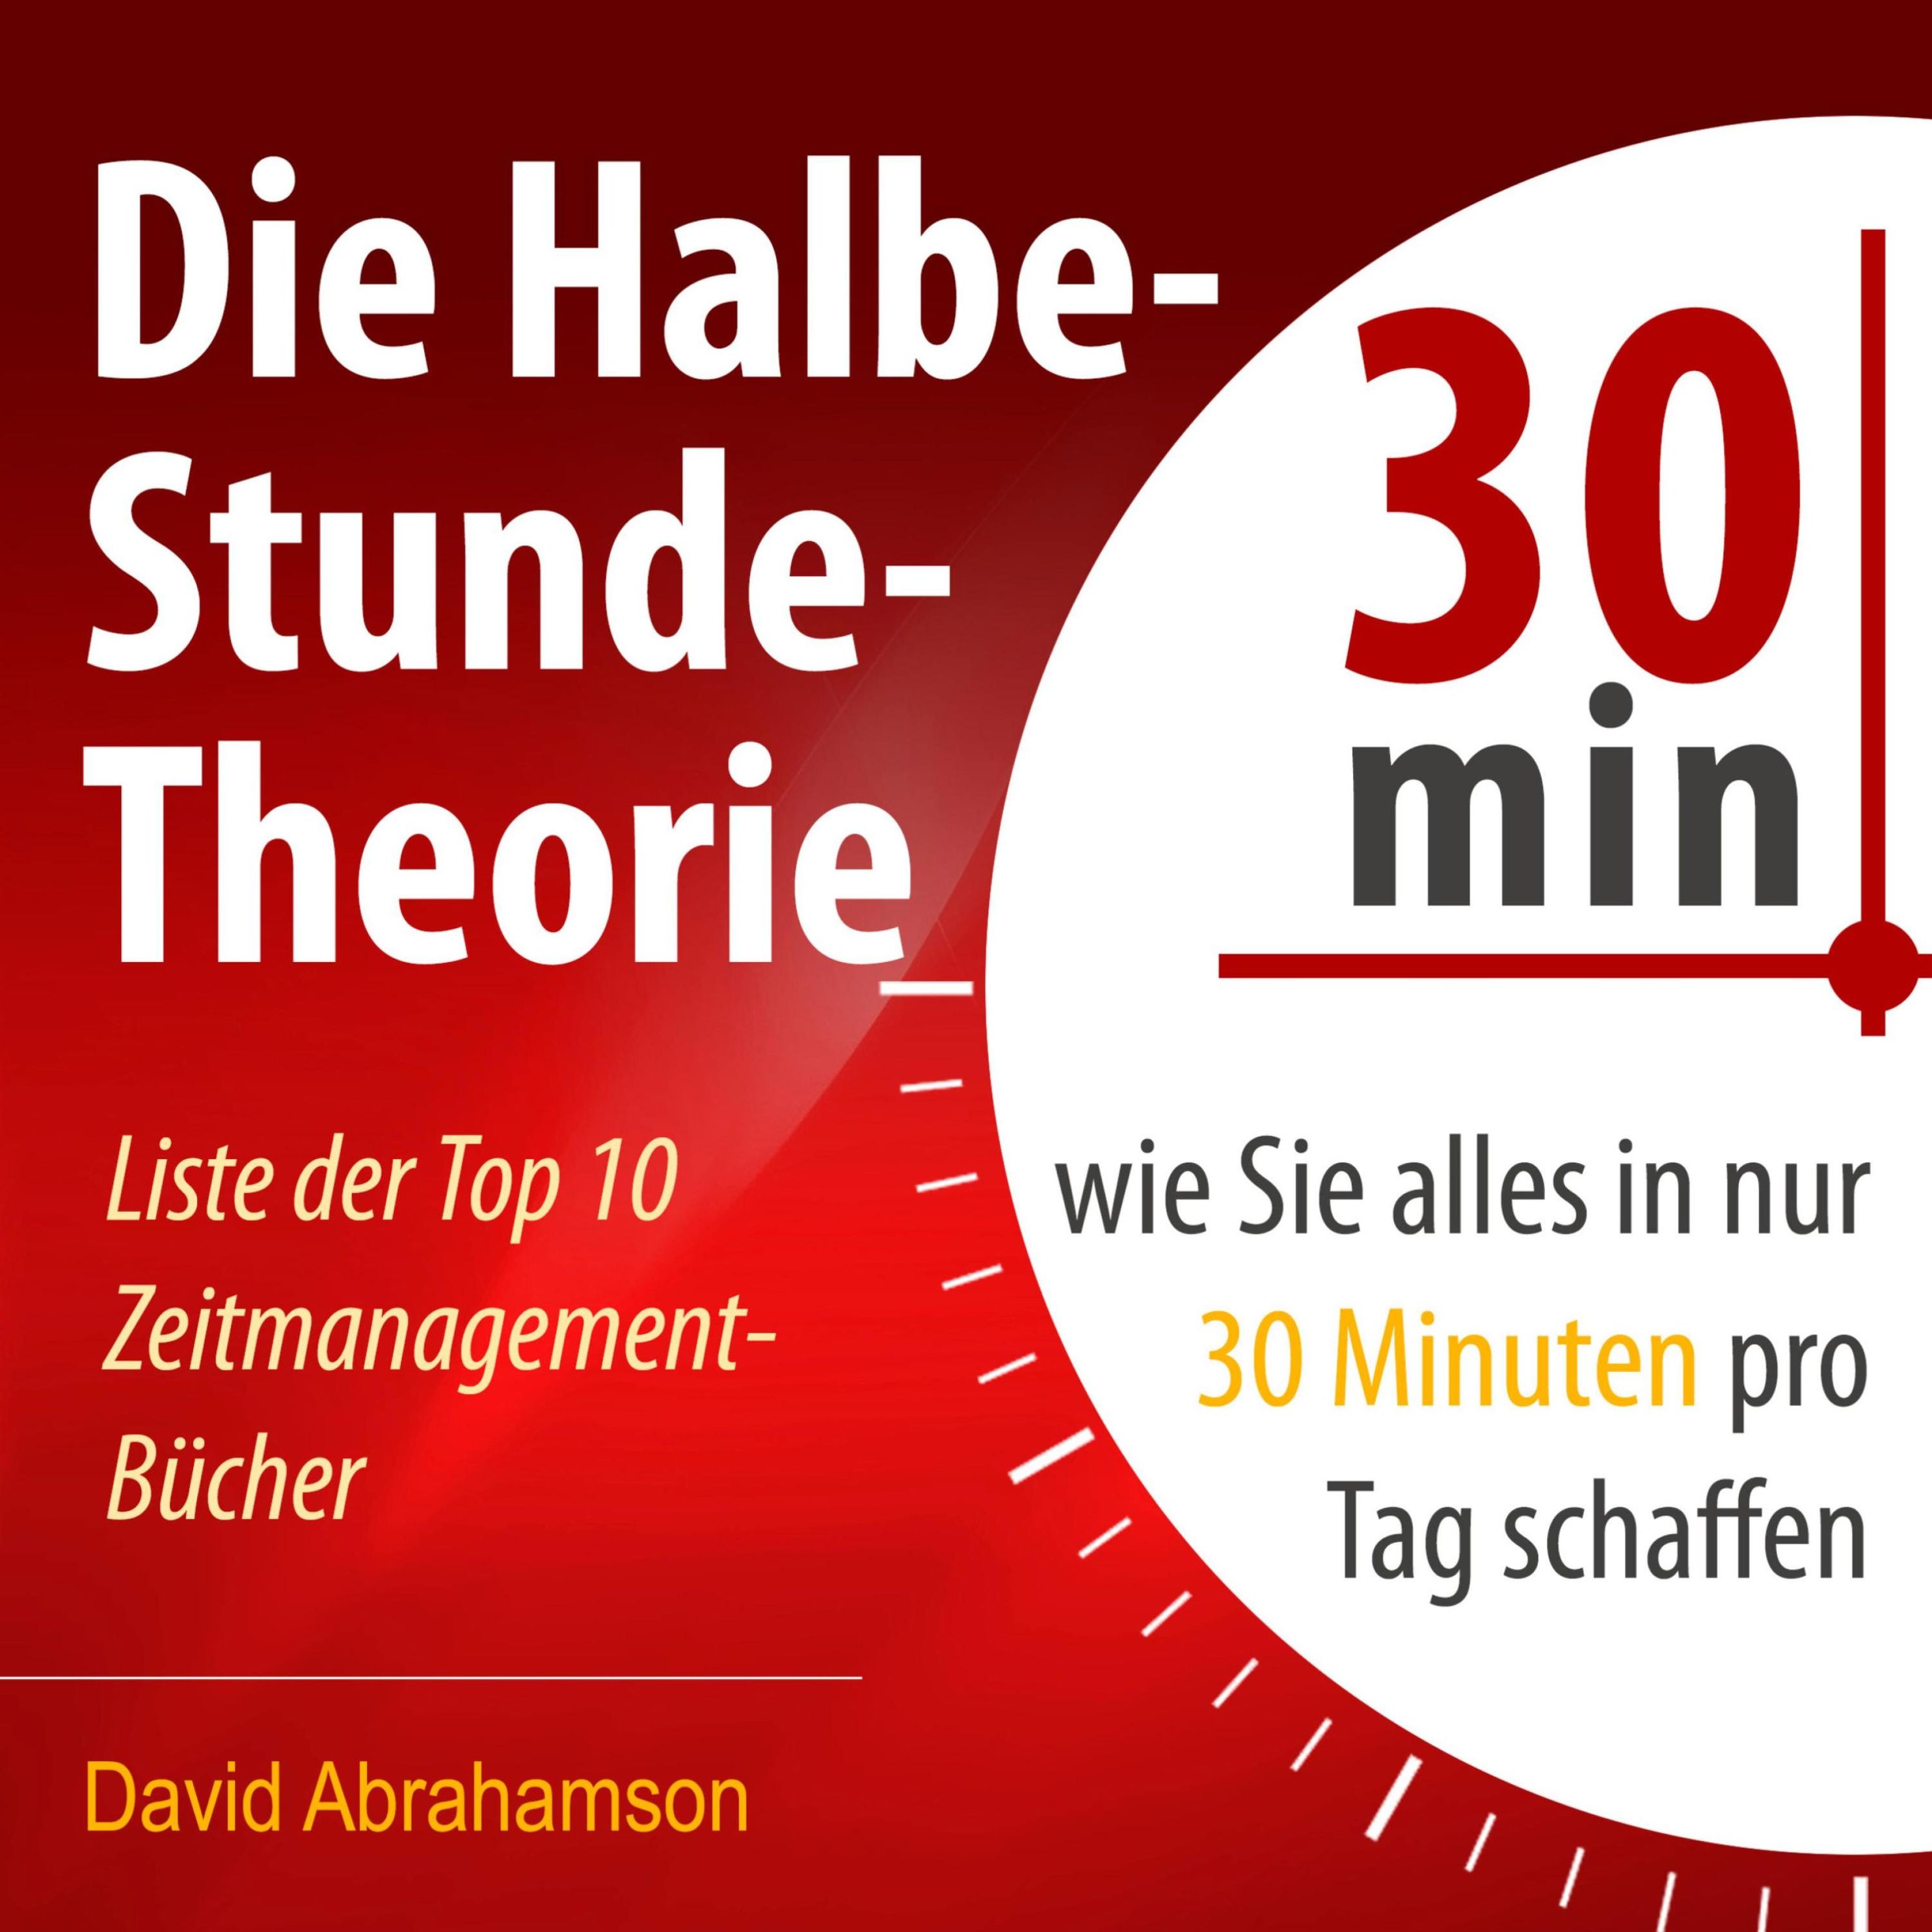 Die Halbe-Stunde-Theorie Hörbuch downloaden bei Weltbild.de